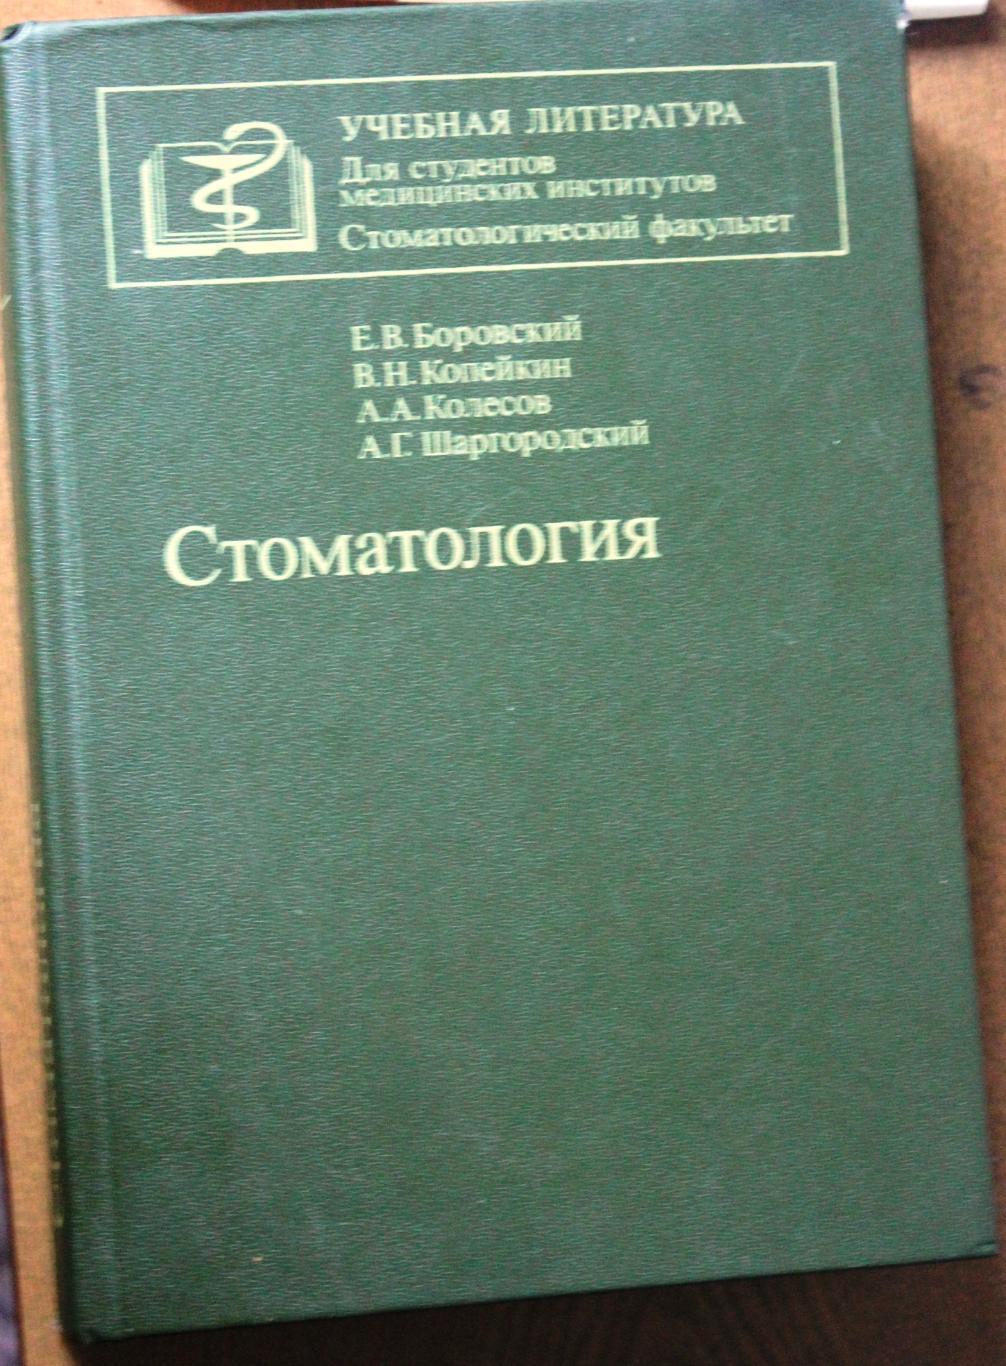 Стоматология. Руководство к практическим занятиям. Москва, Медицина, 1987